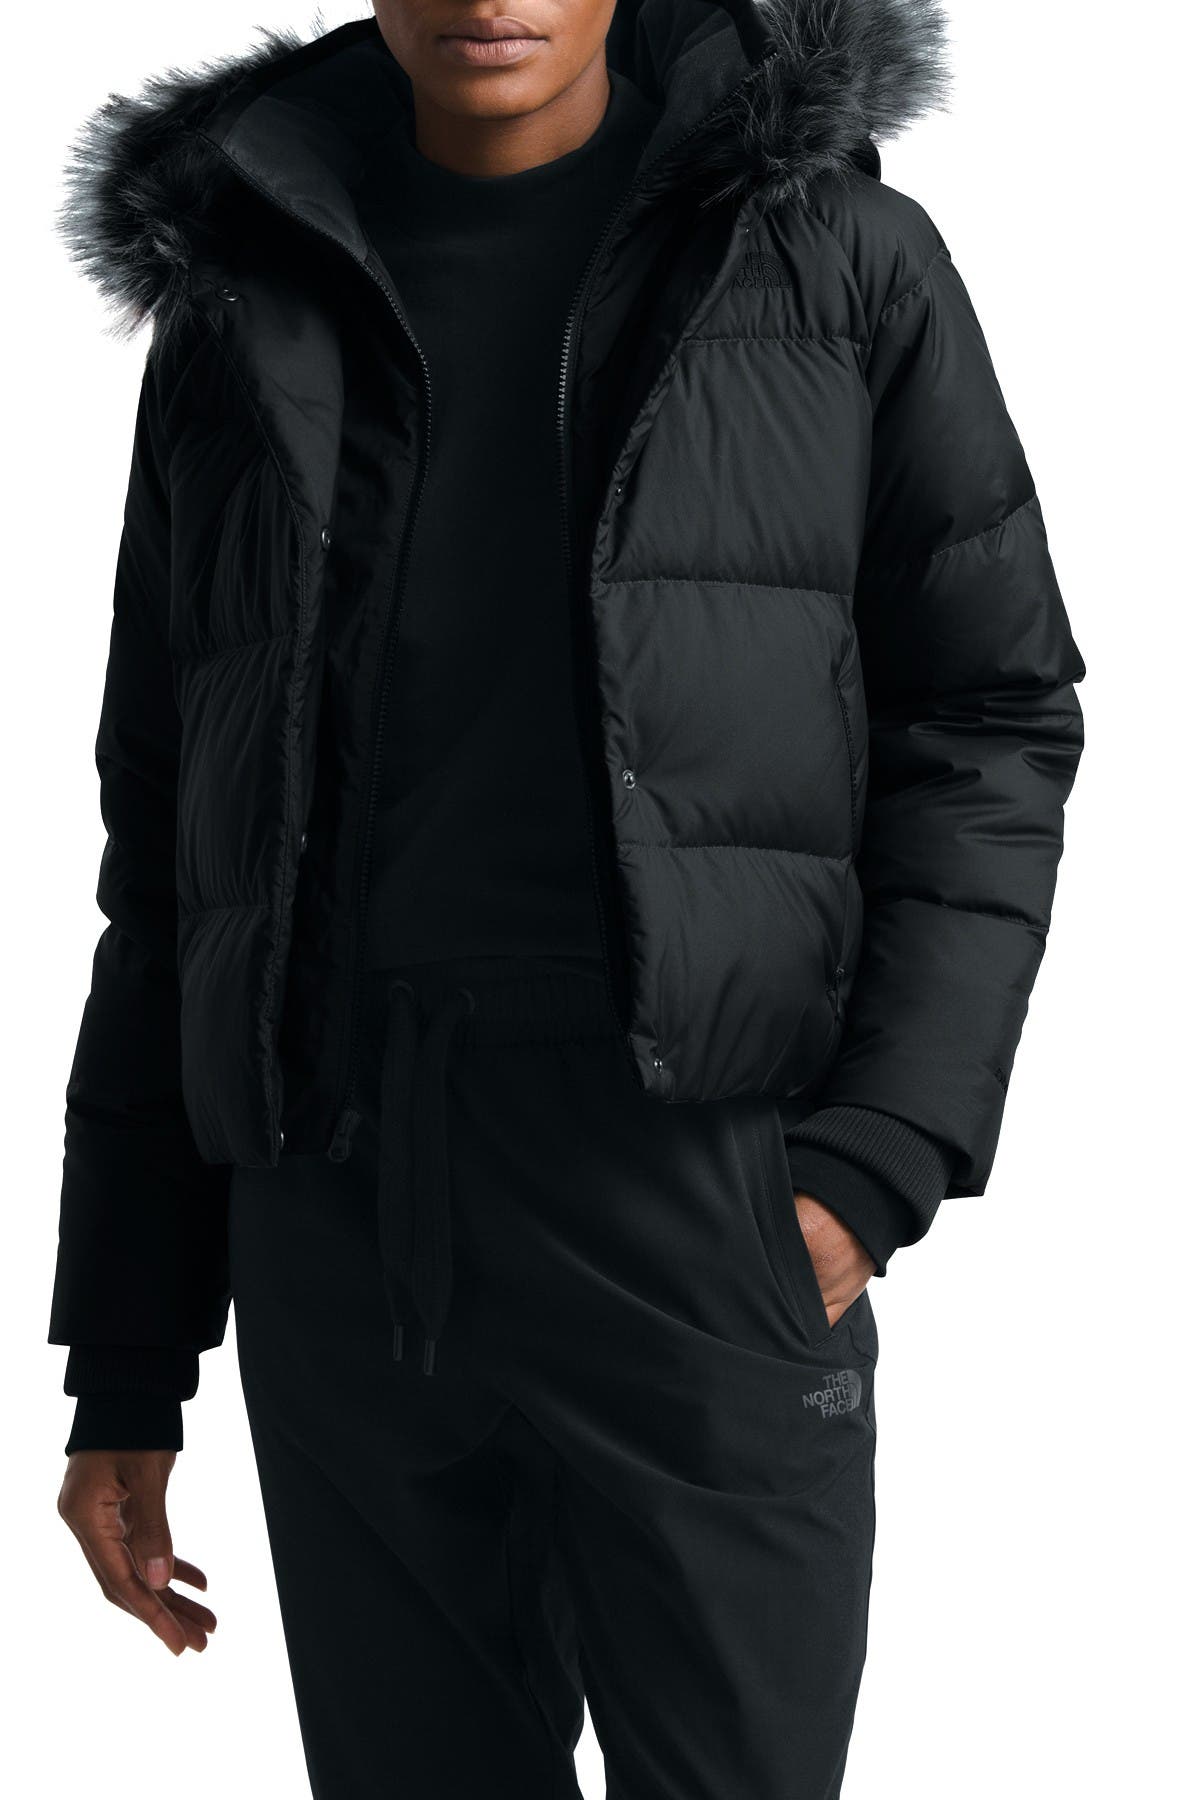 black fur north face jacket